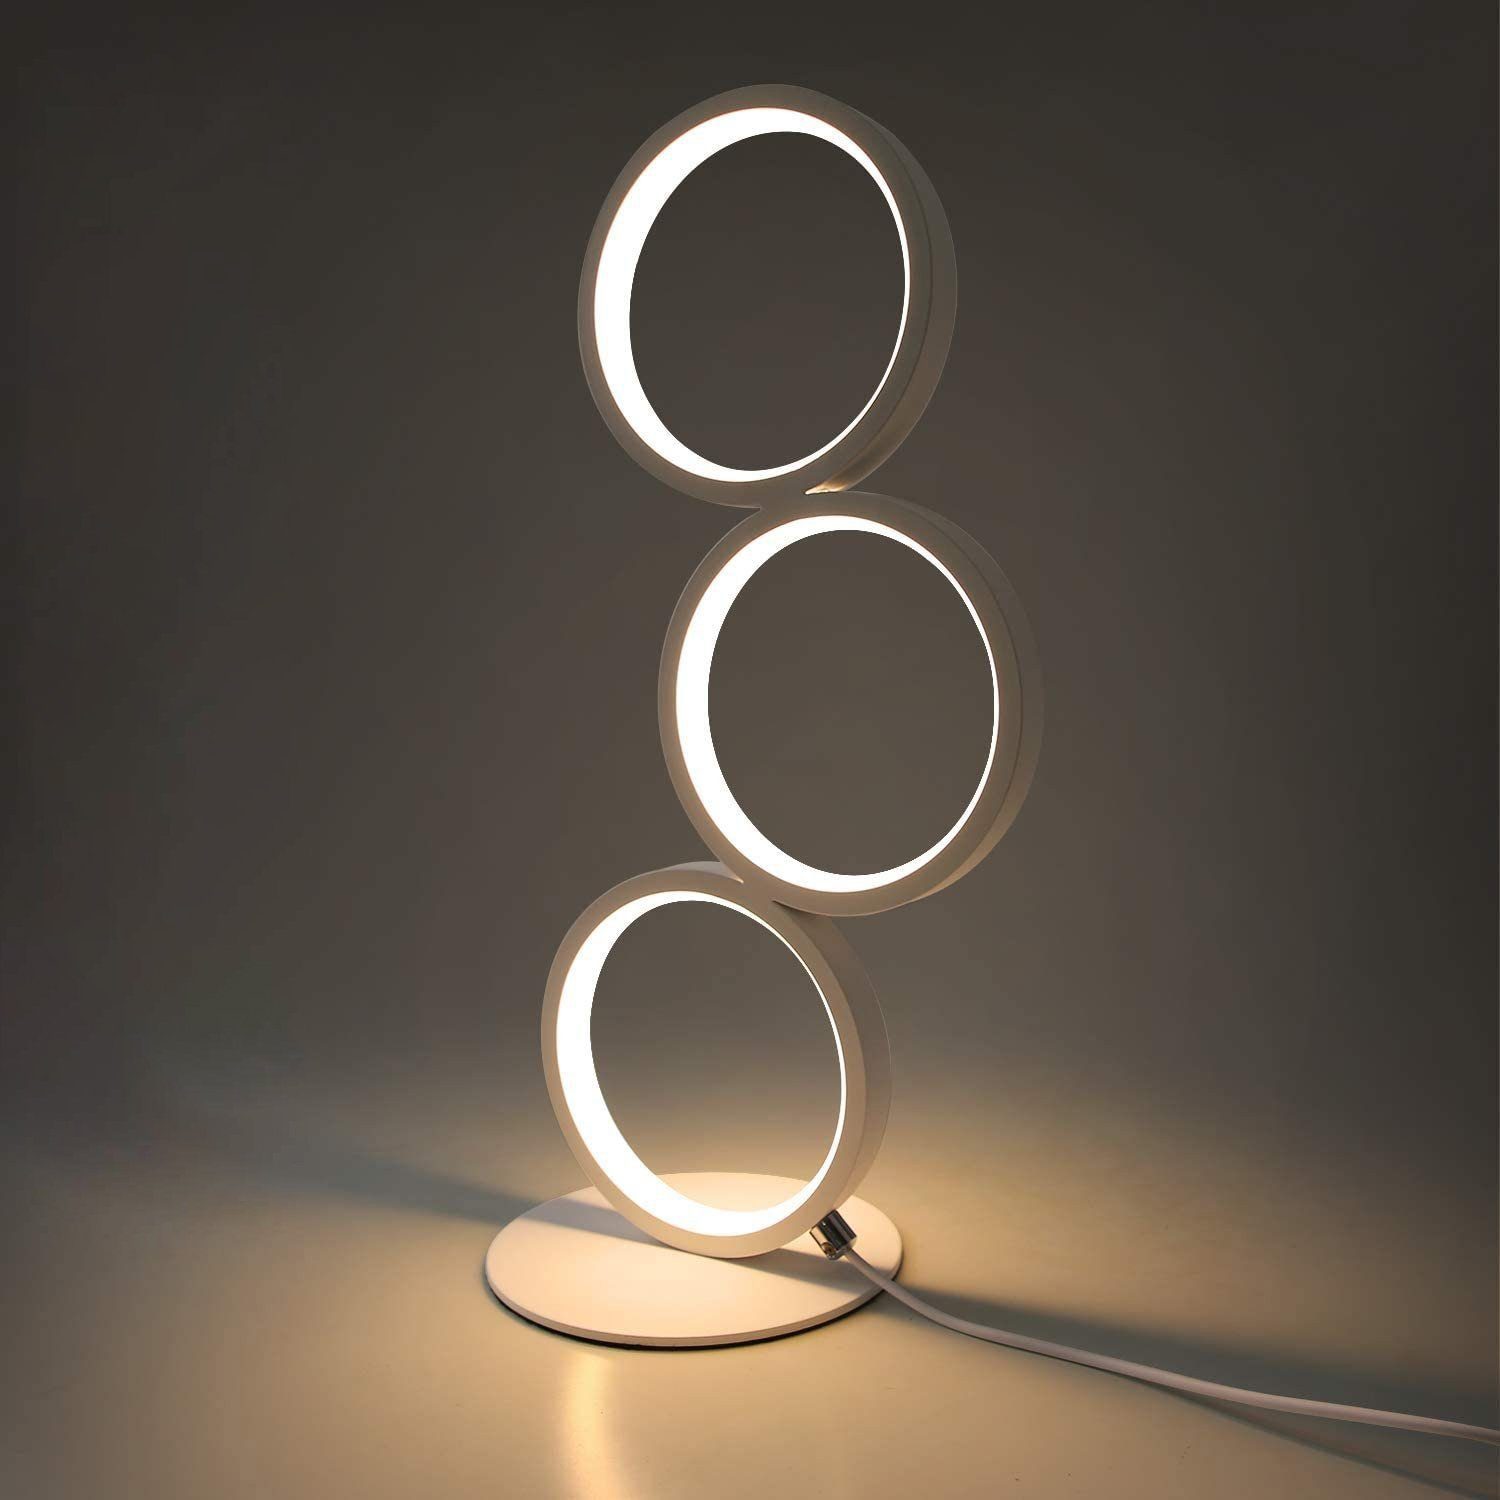 12 LED Tisch Leuchte Nachttisch Lampe Schreibtischlampe Wohnzimmerlampen 